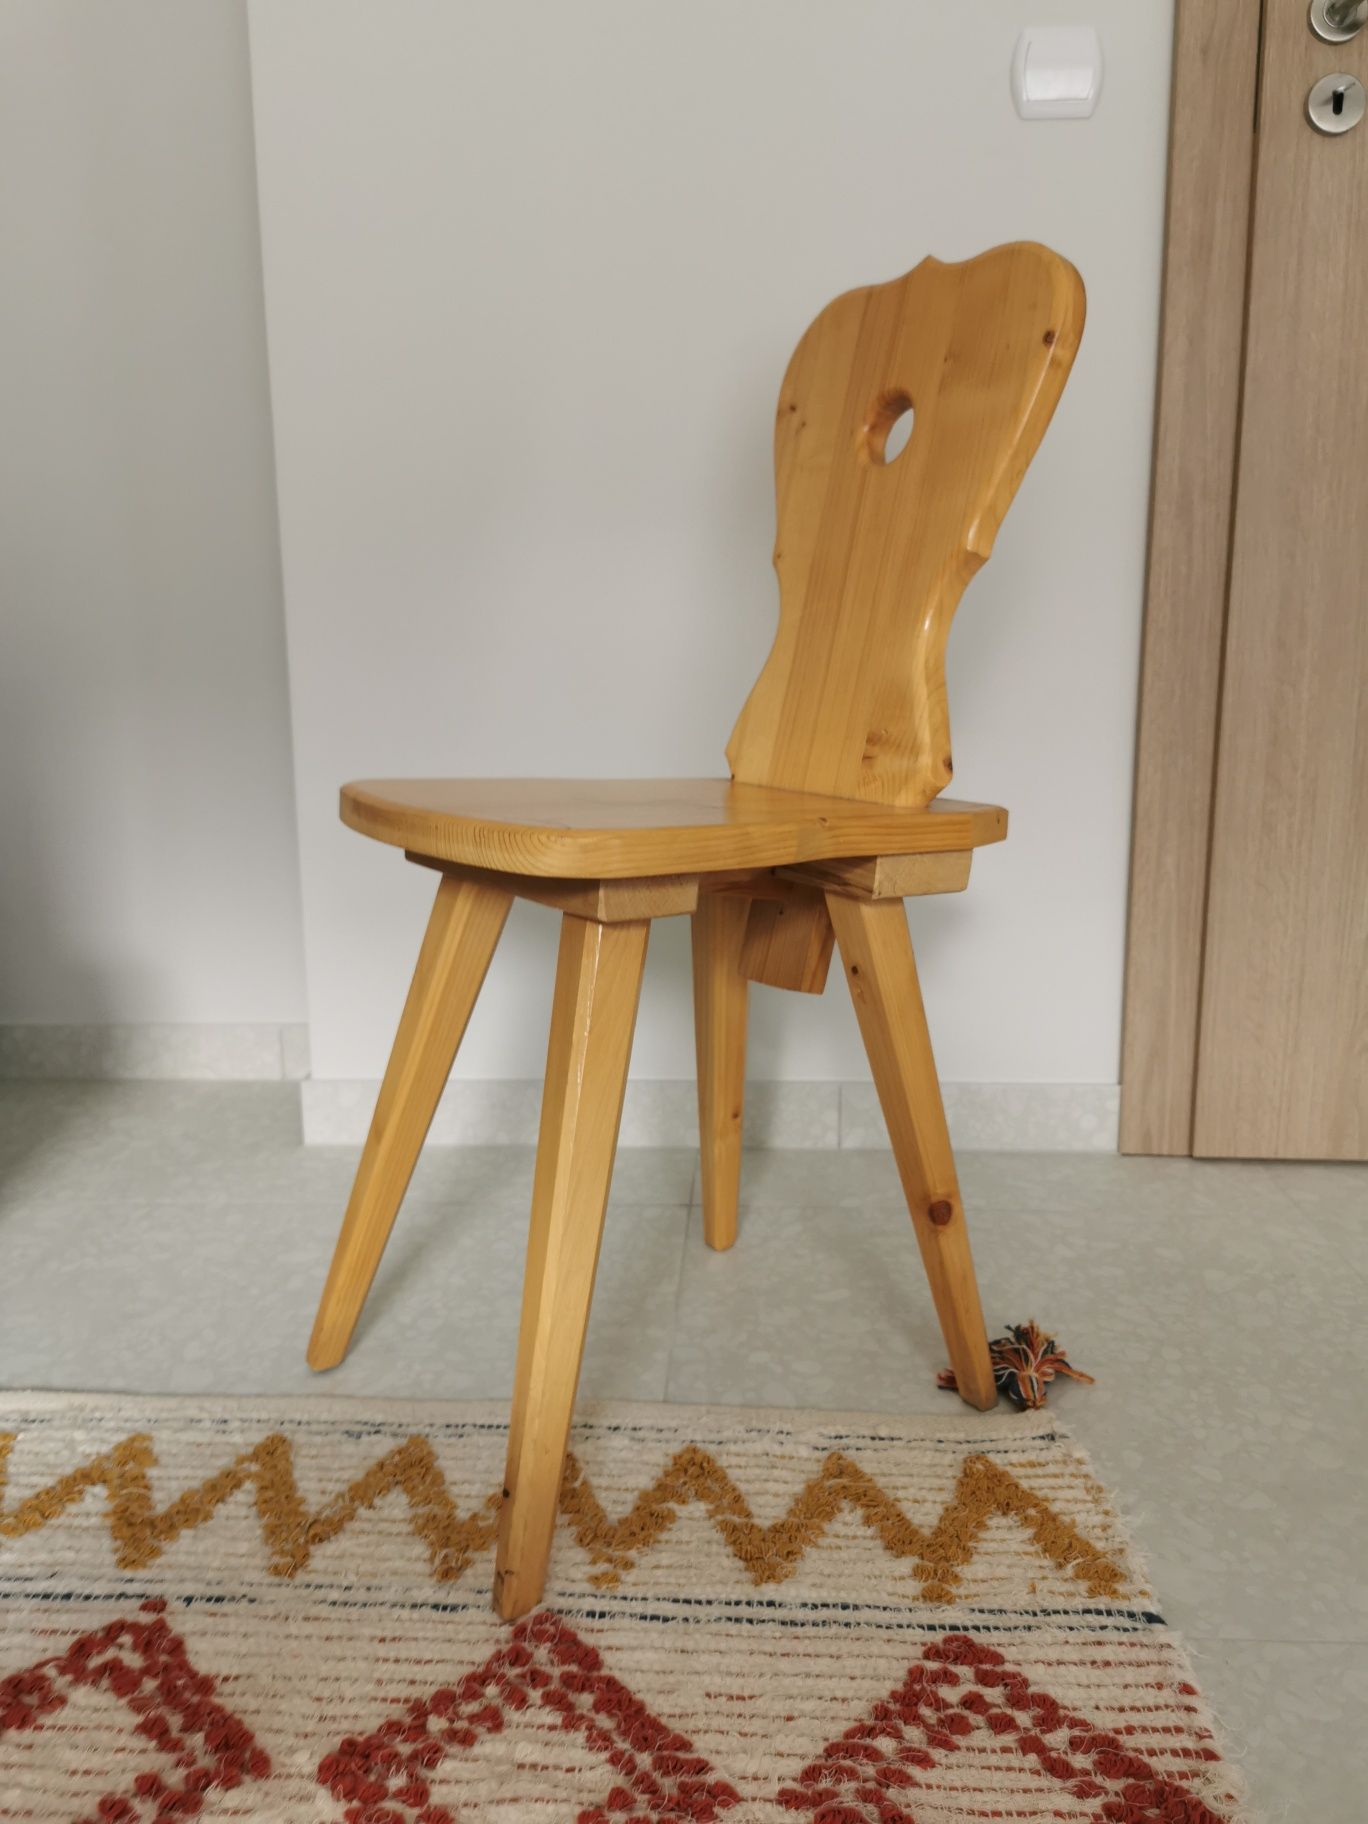 Krzesło lite drewno - zydel podhalański styl